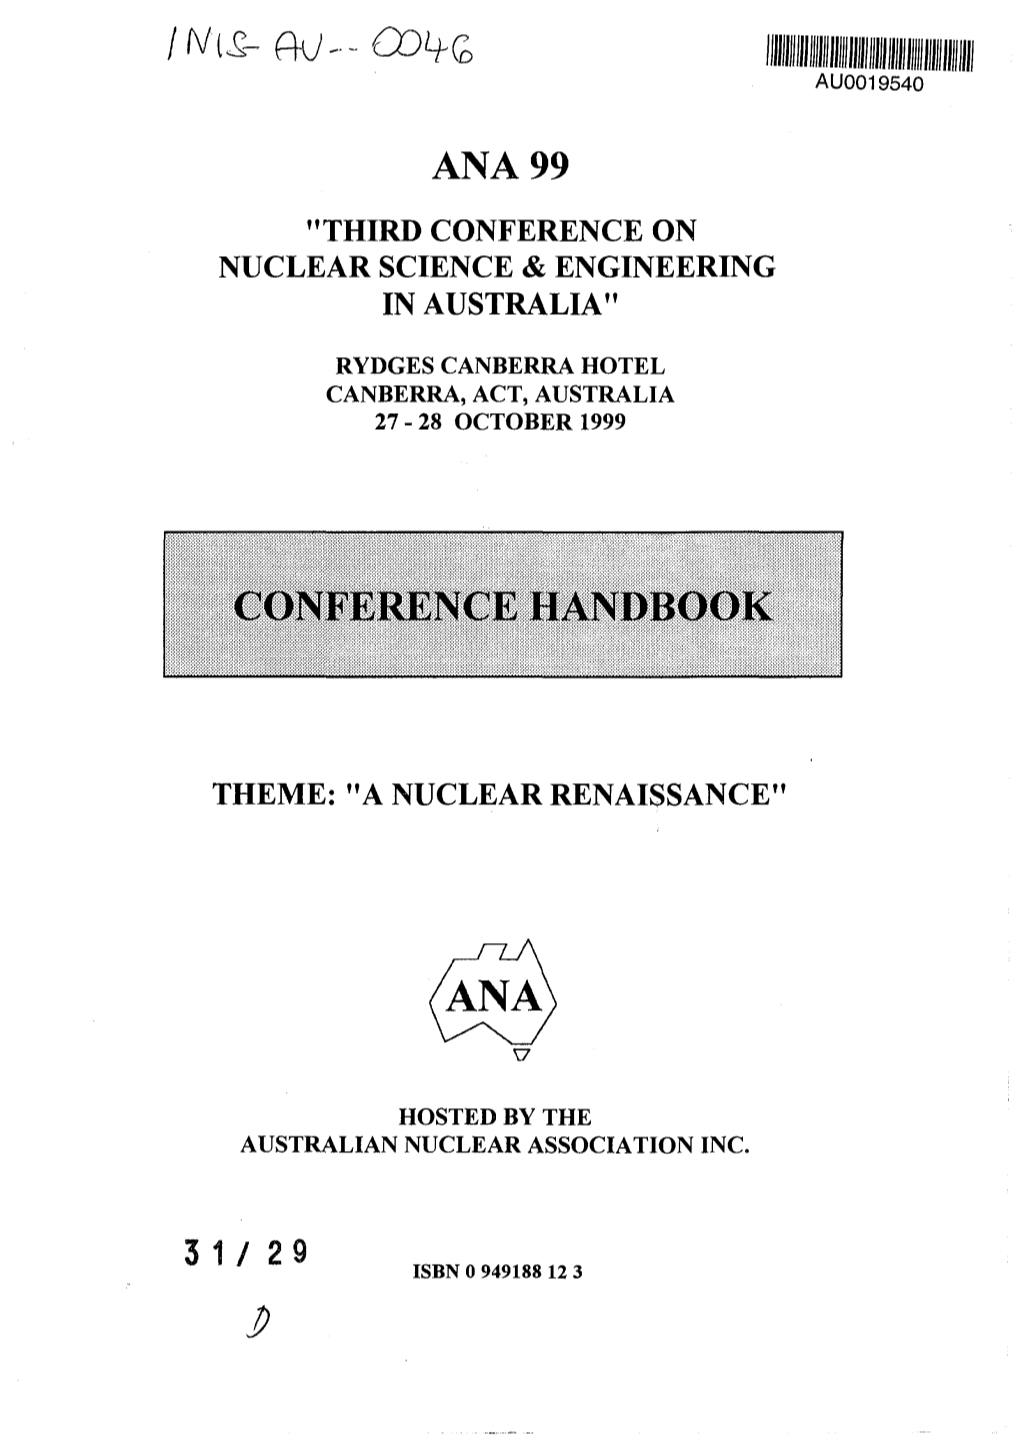 Conference Handbook